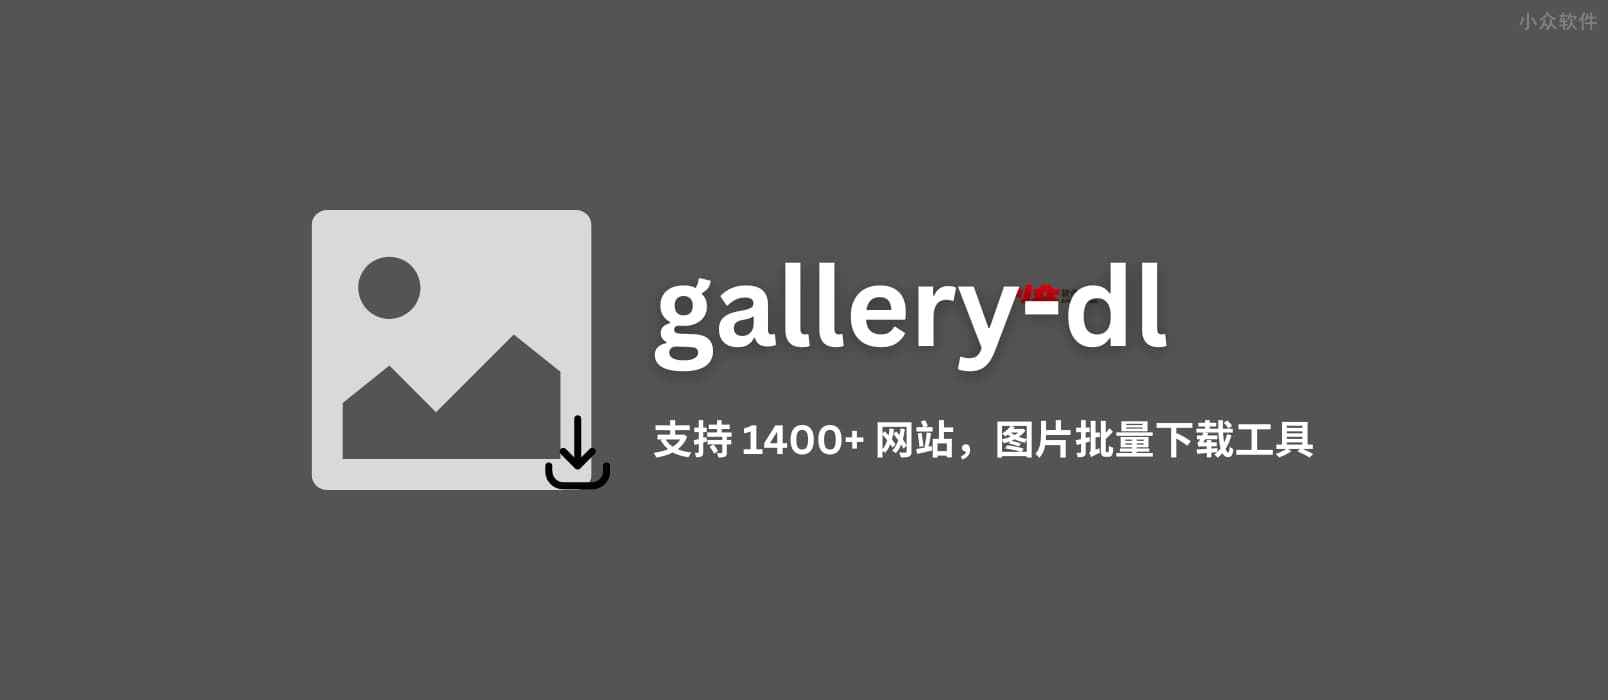 gallery-dl – 支持 1400+ 网站的开源图片批量下载工具